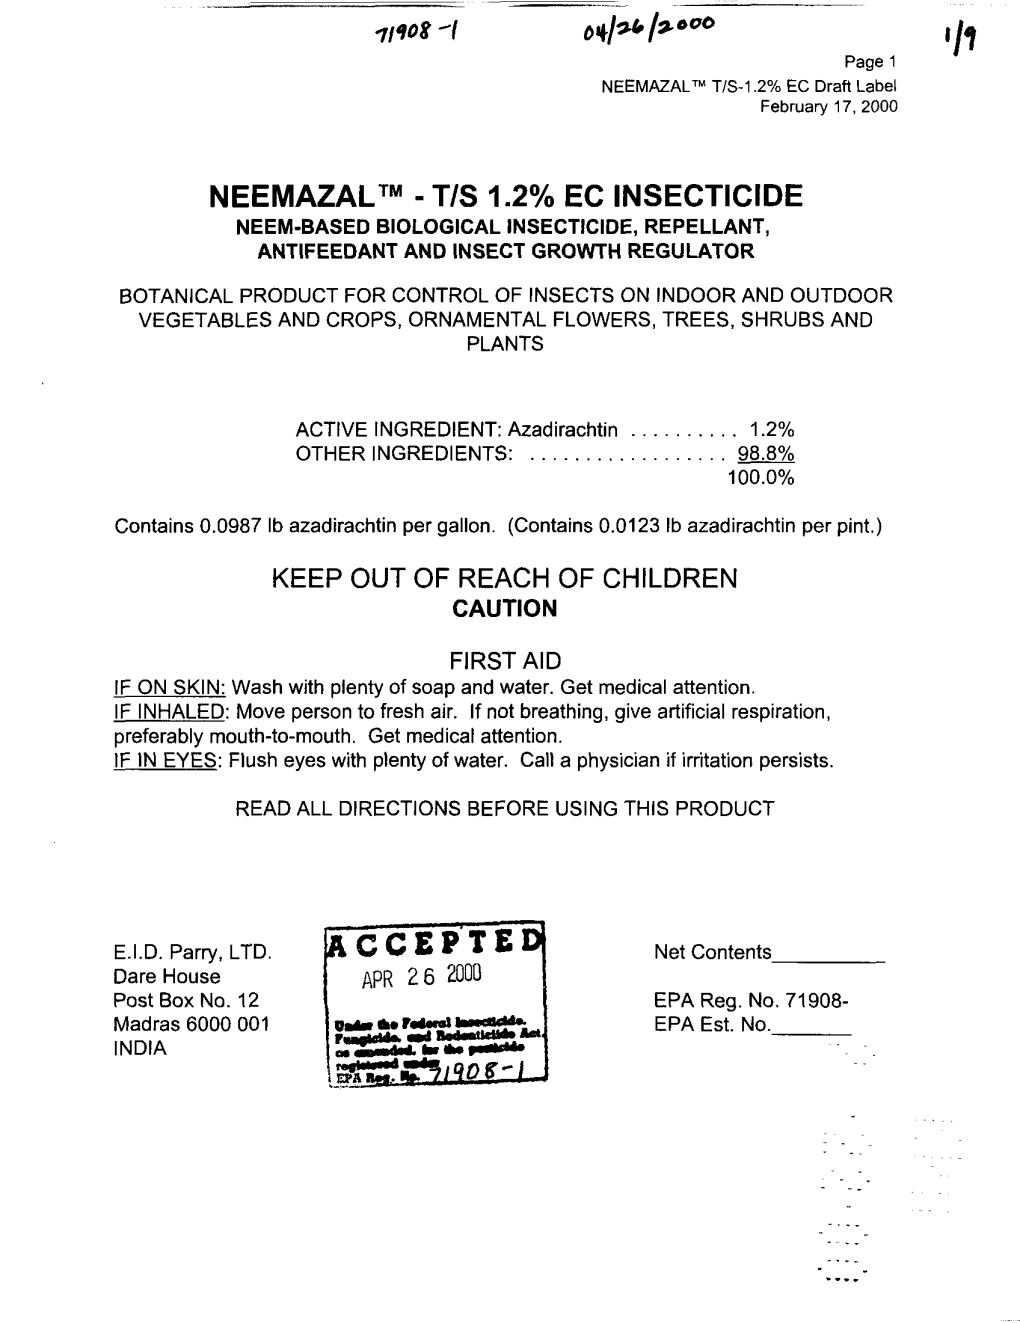 U.S. EPA, Pesticide Product Label, NEEMAZAL T/S 1.2%EC